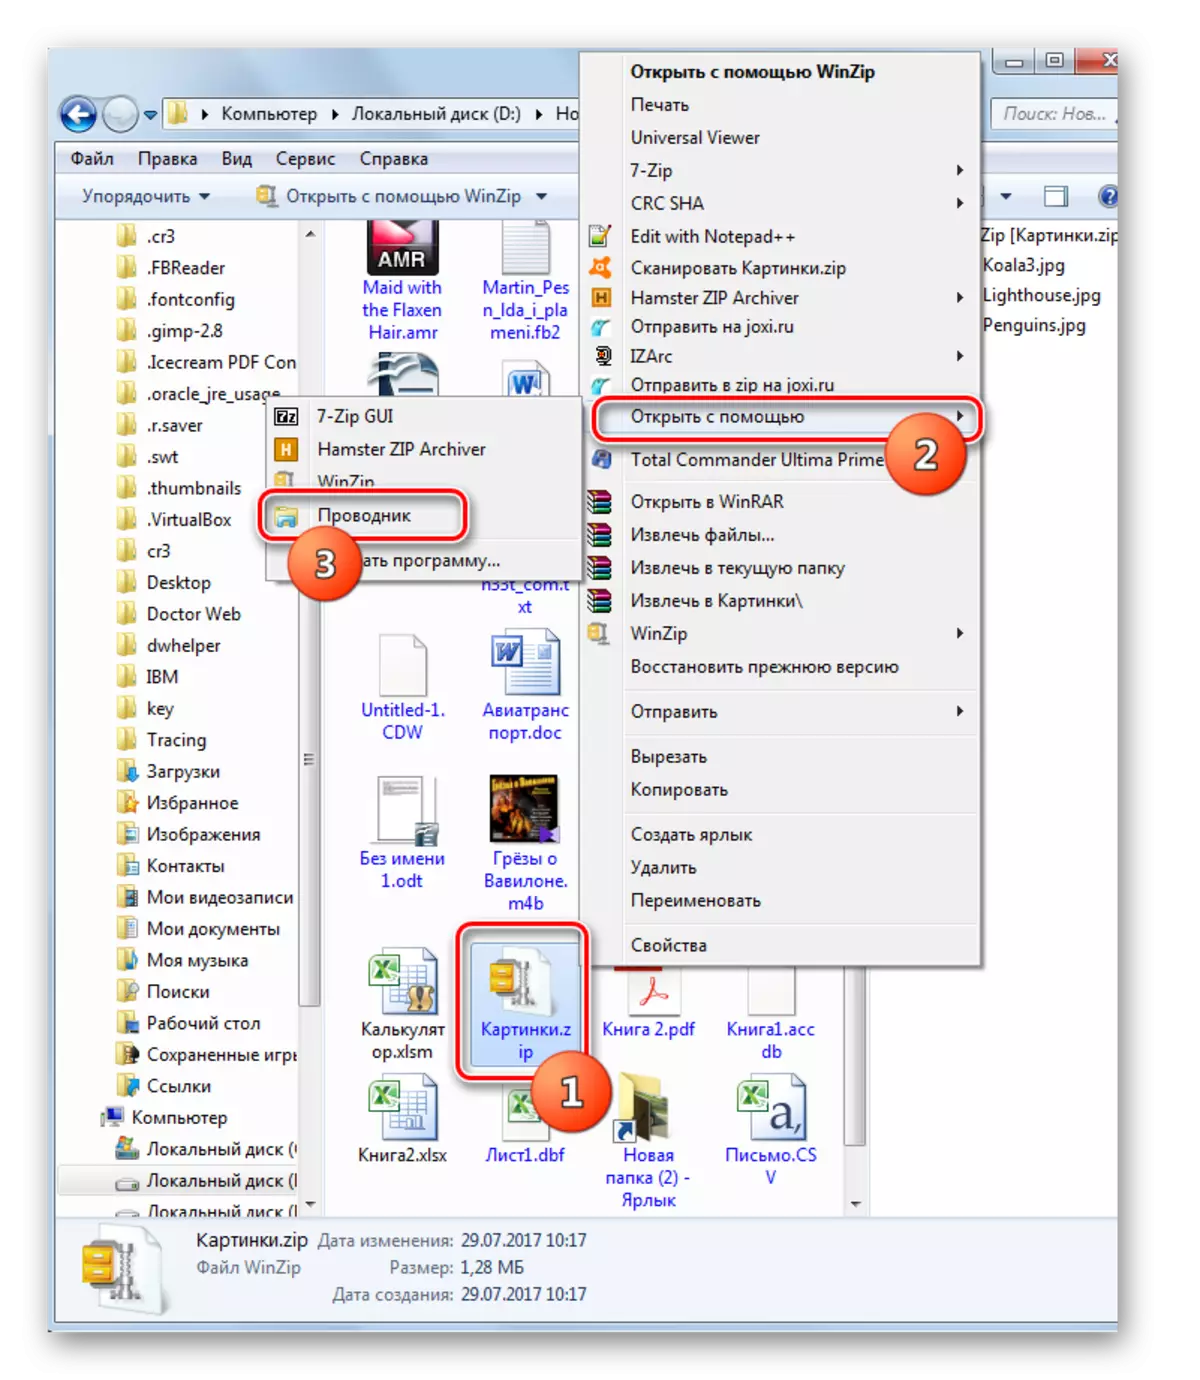 Fanokafana ny Archive Zip ao amin'ny Windows Explorer amin'ny alàlan'ny menu kontee